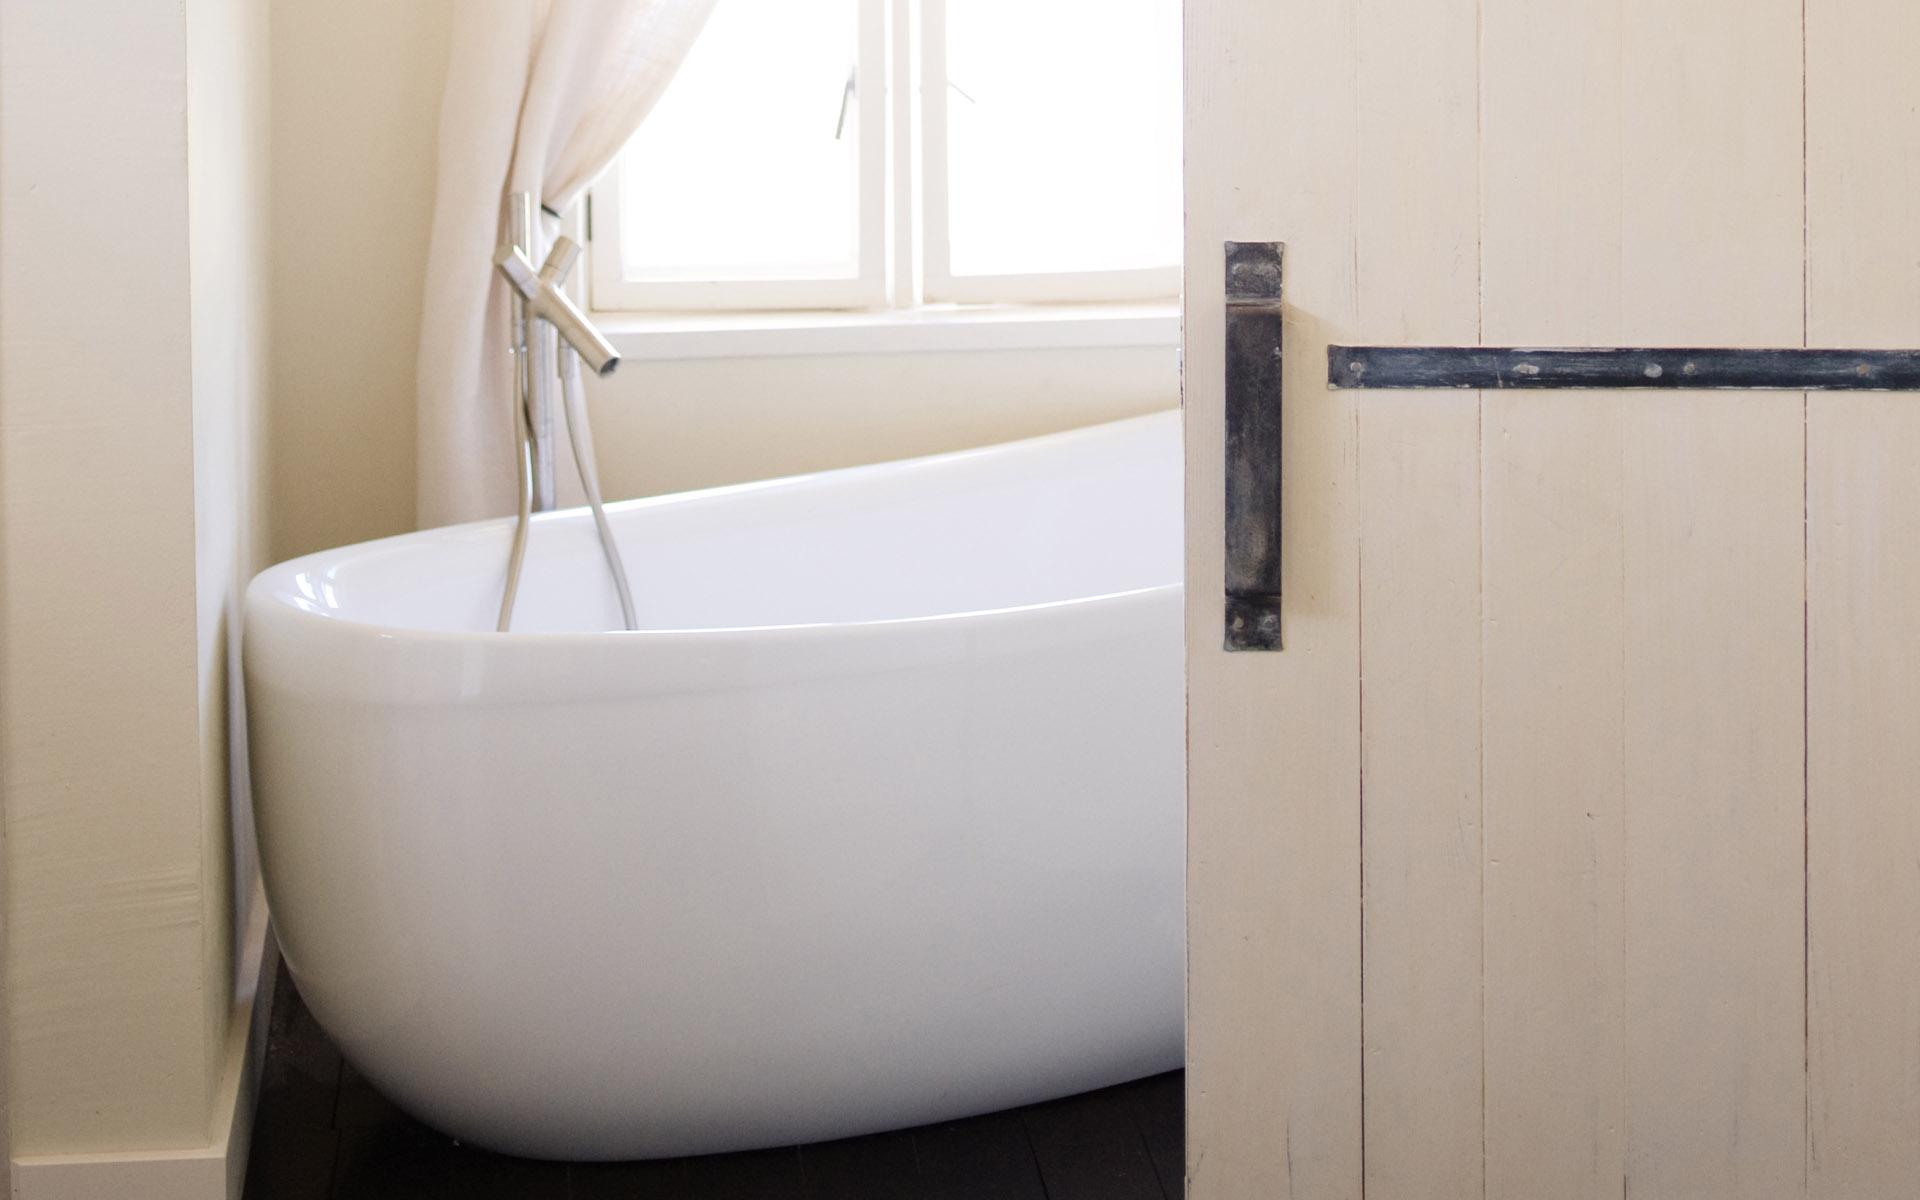 简约优雅的浴室设计效果图图片(3)